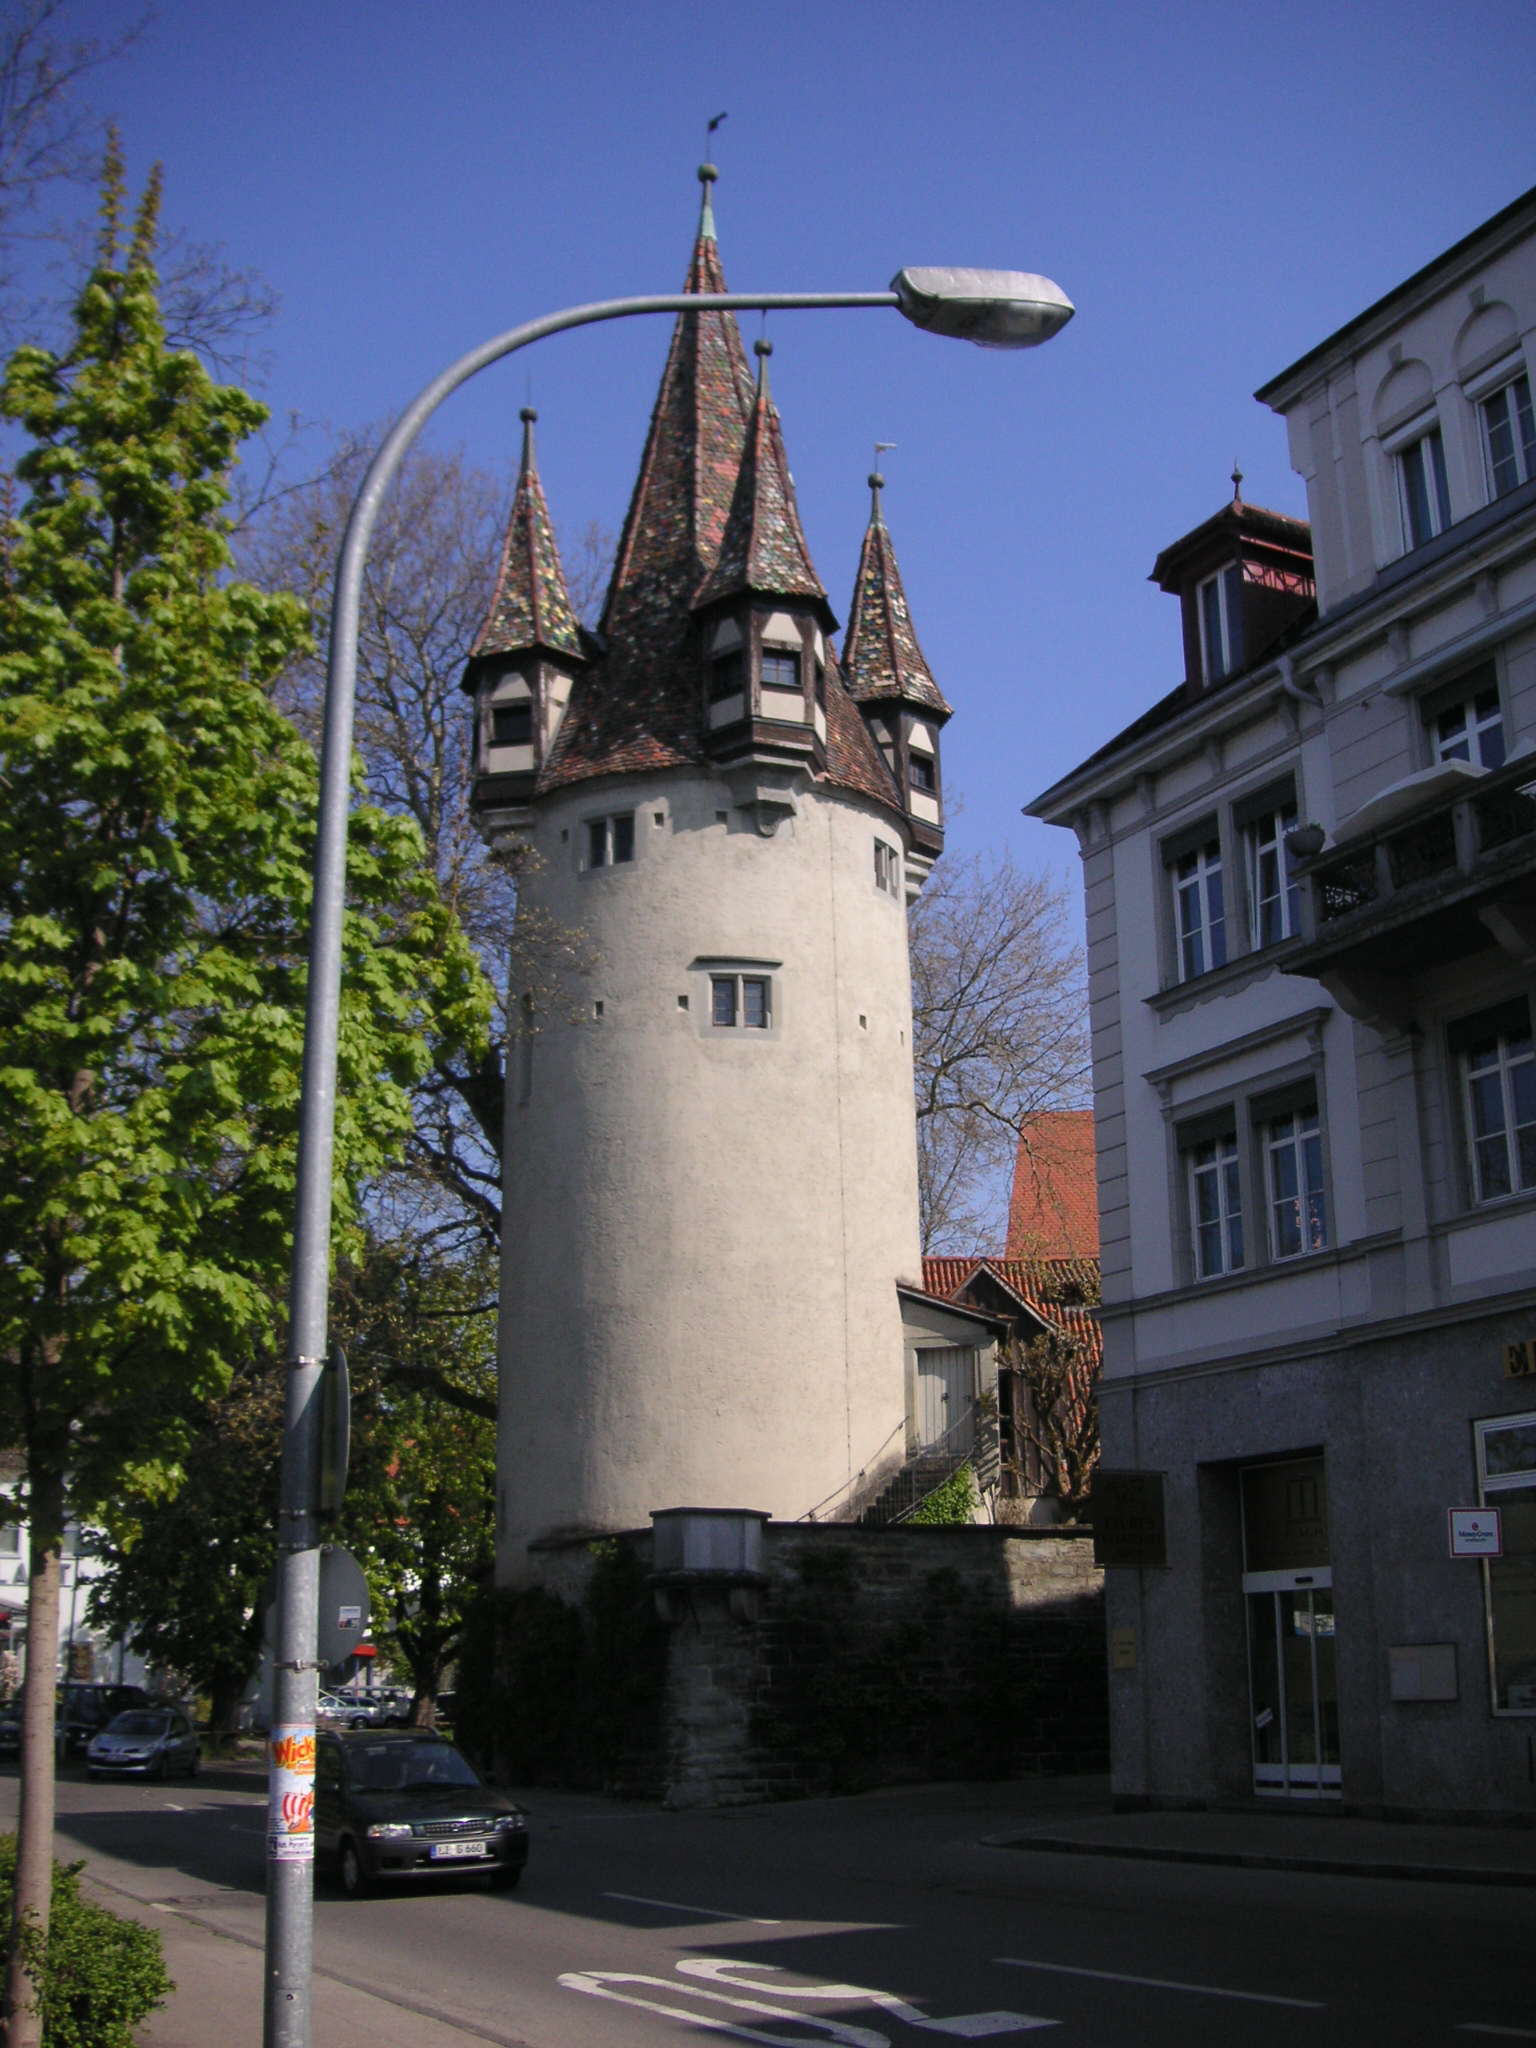 Diebsturm (Thieves' Tower)